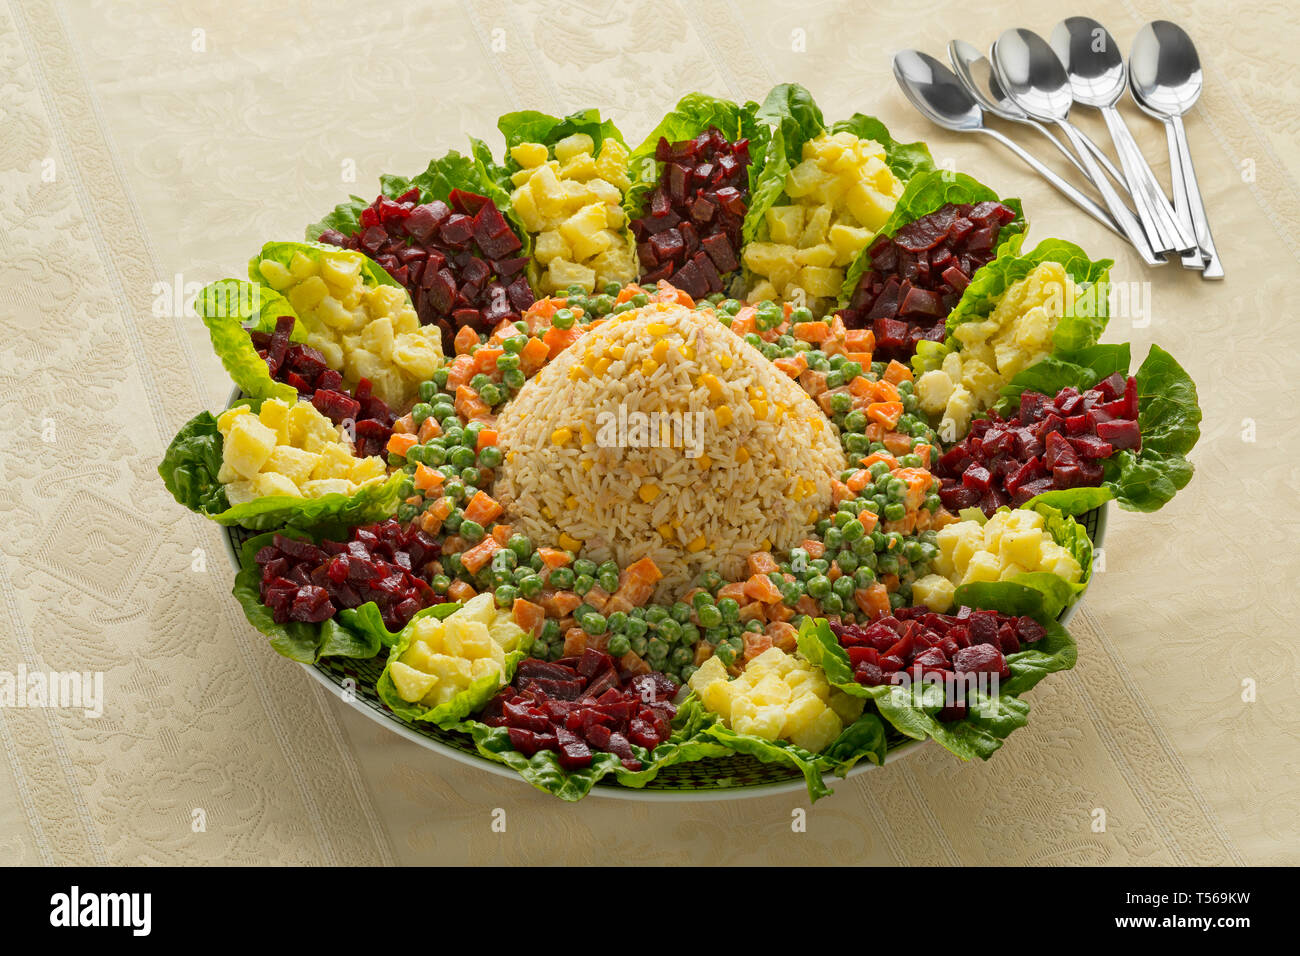 Piatto con la tradizionale festa marocchina sana insalata mista Foto Stock